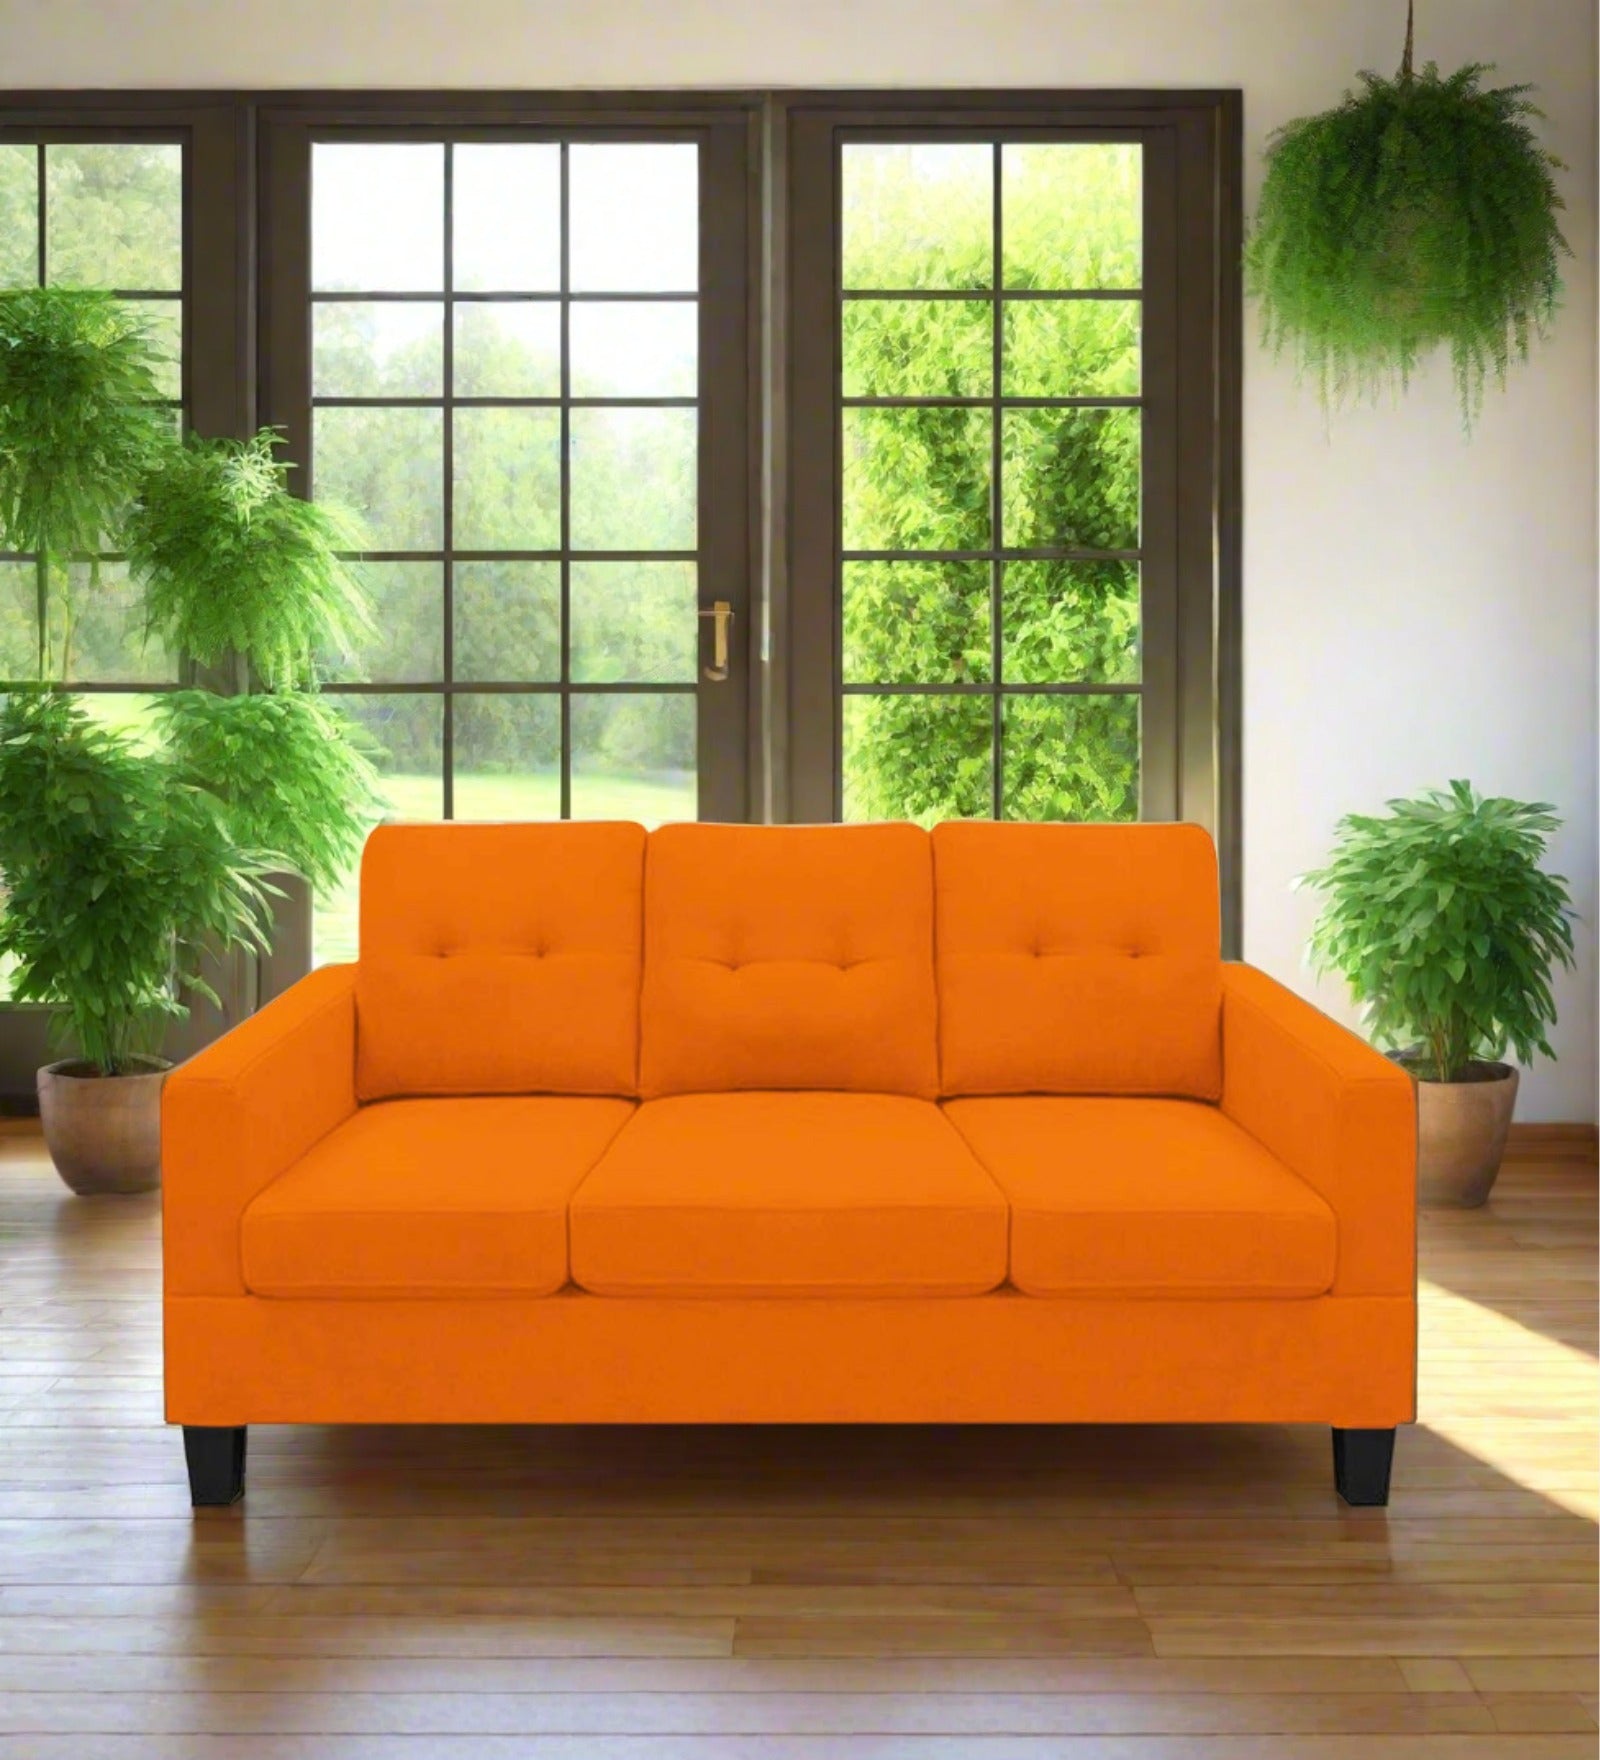 Thomas Fabric 3 Seater Sofa in Vivid Orange Colour